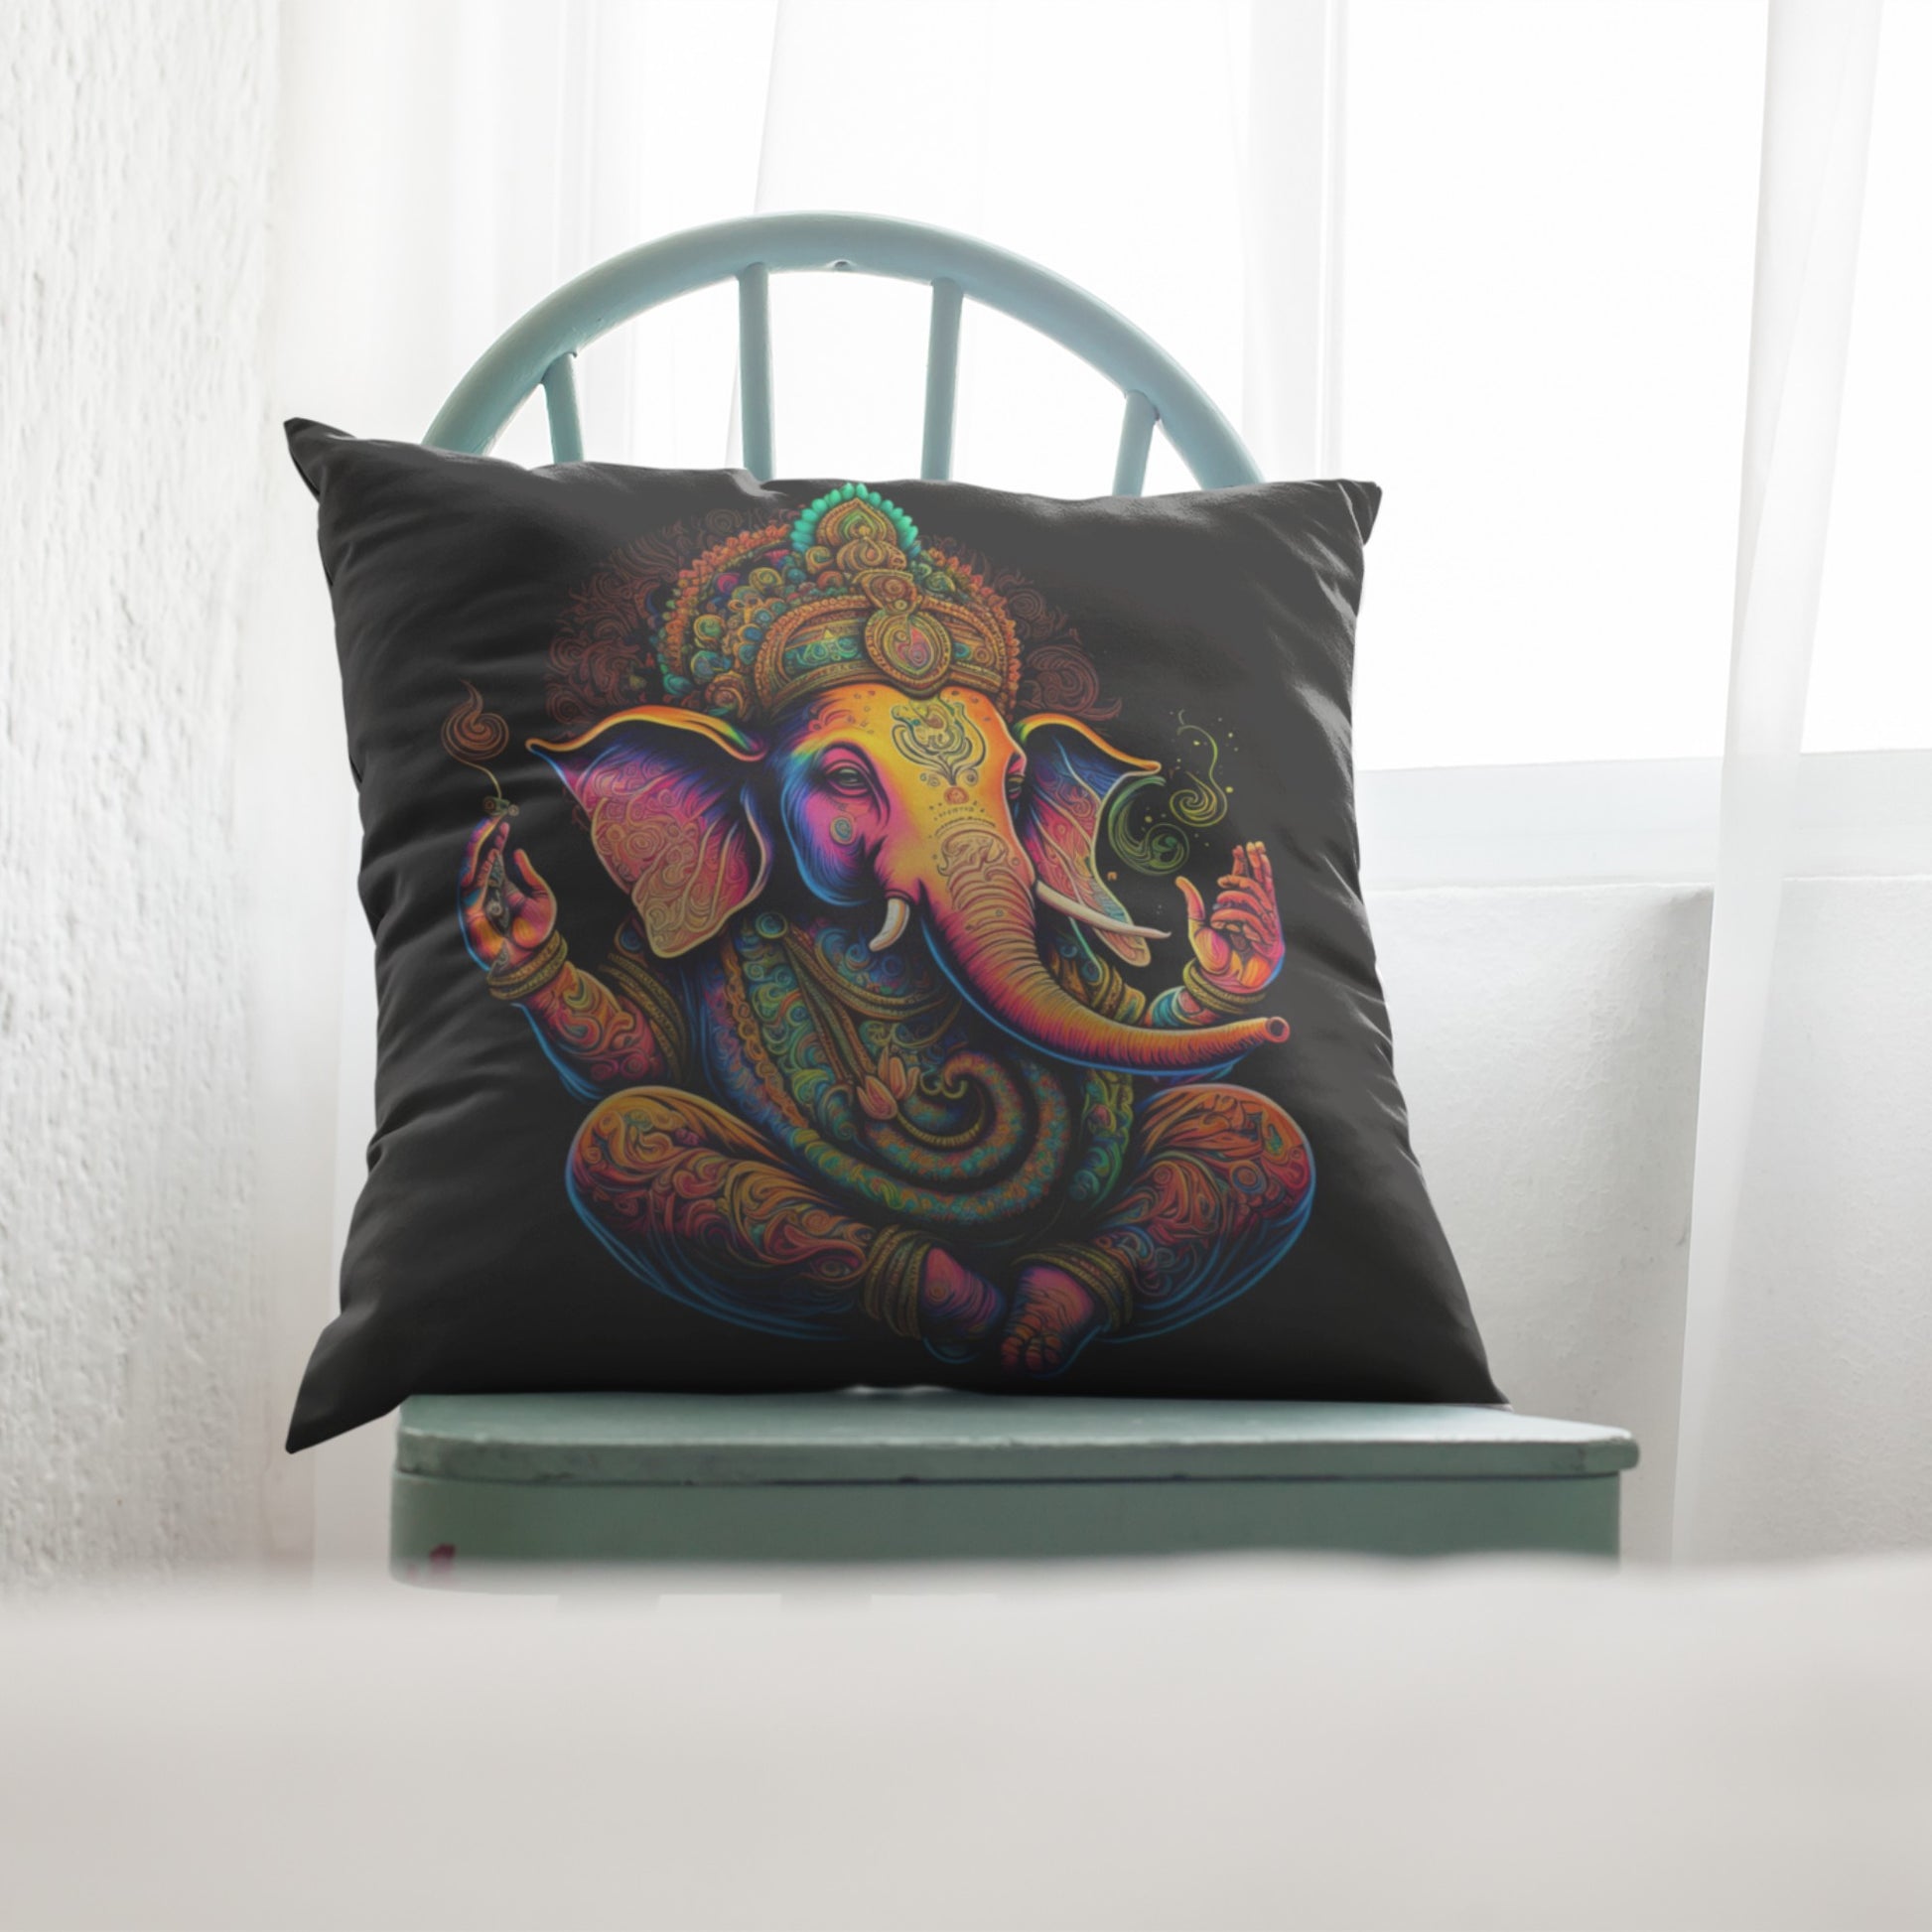 Zen-inspired Elephant Pillow Design